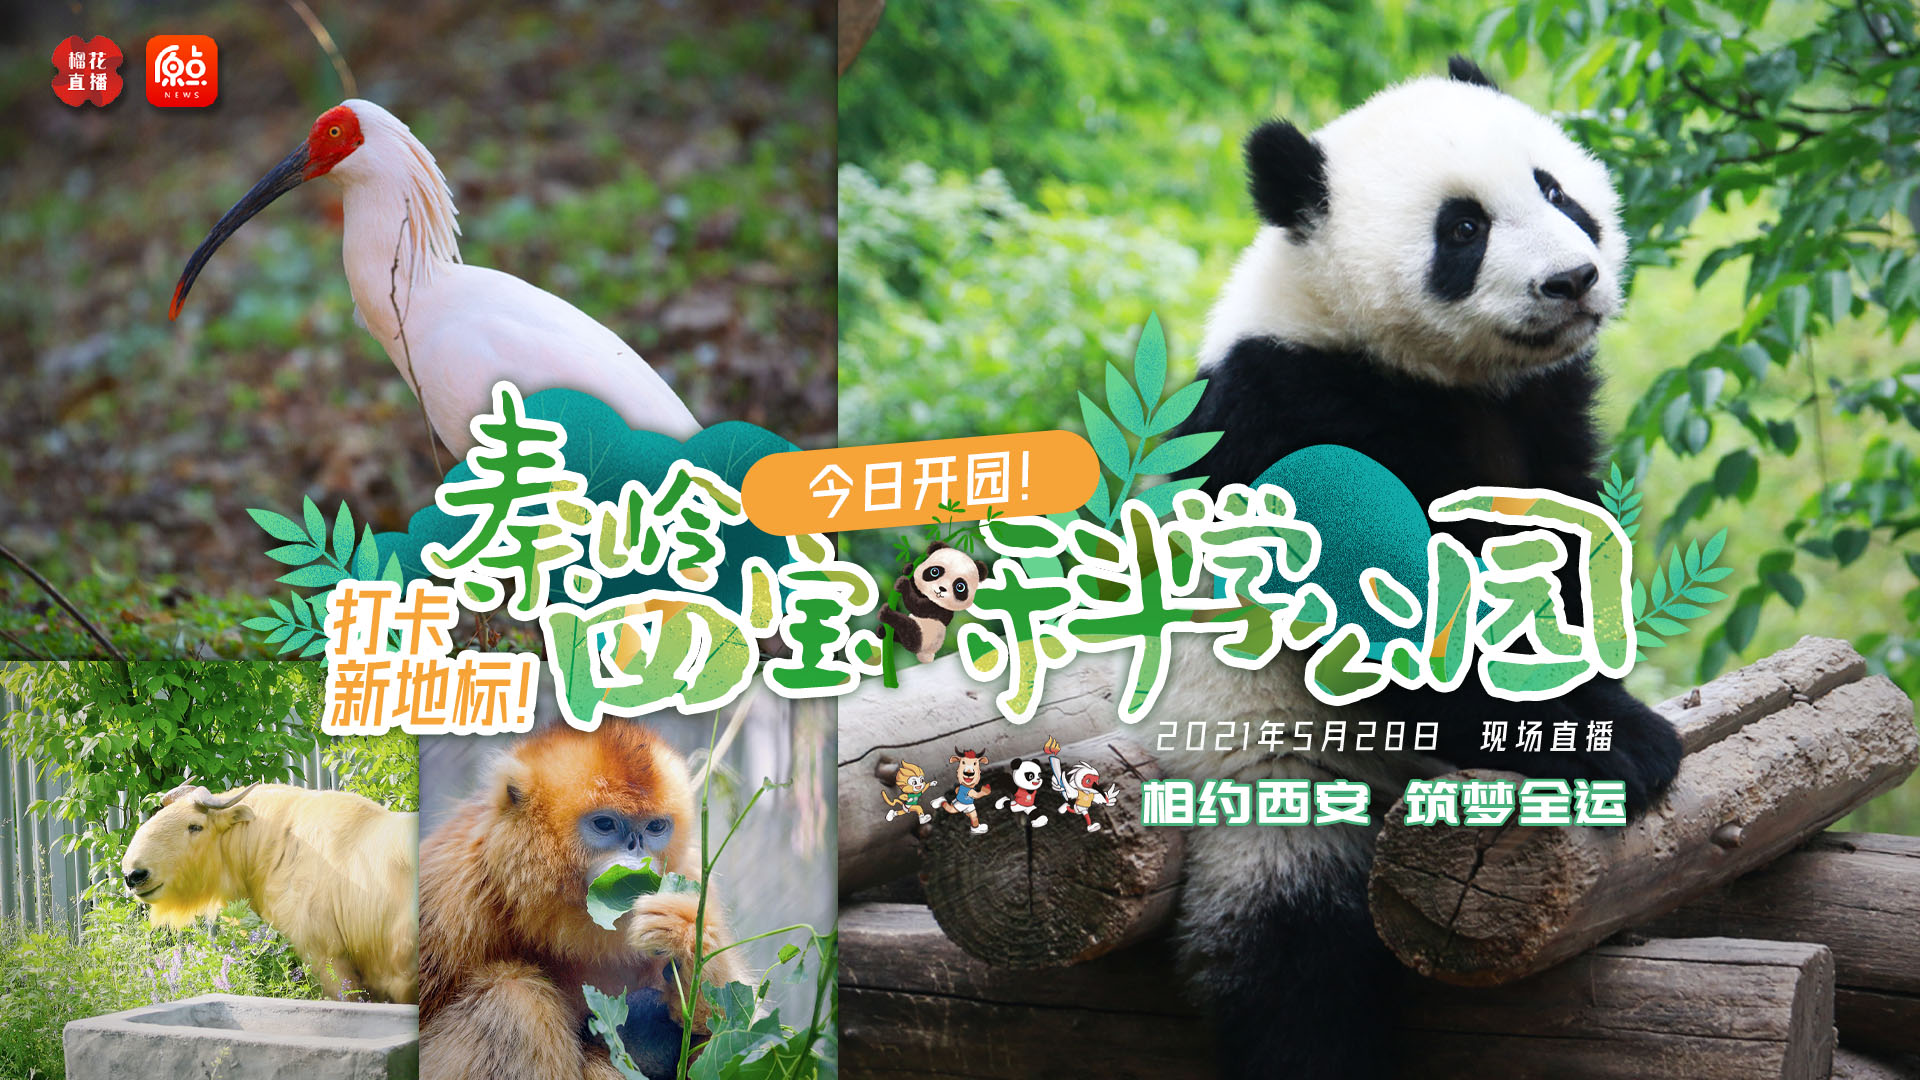 秦岭四宝科学公园开园 全球唯一圈养棕色大熊猫将亮相